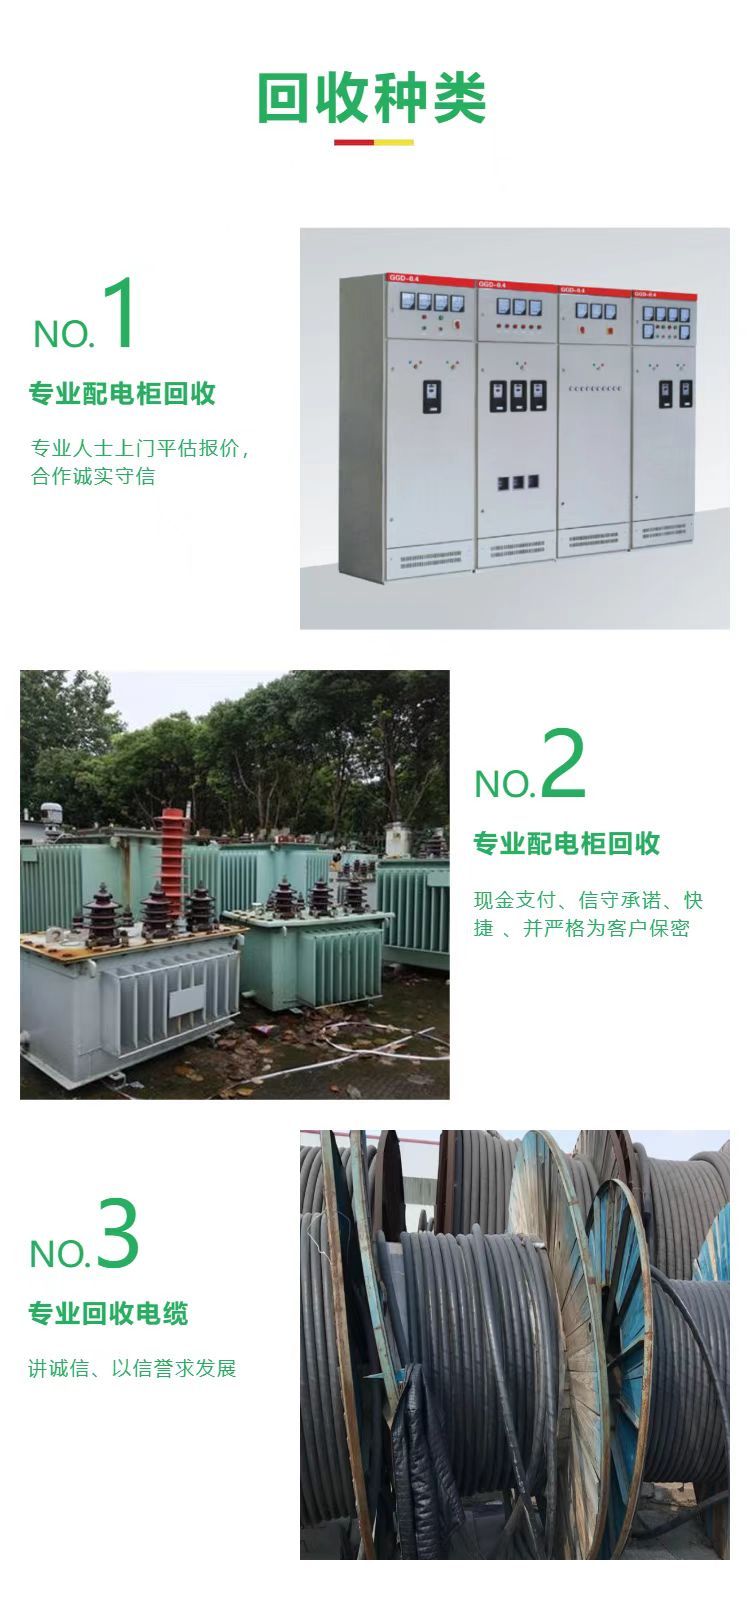 广州增城配电柜拆除回收变电站收购厂家提供服务